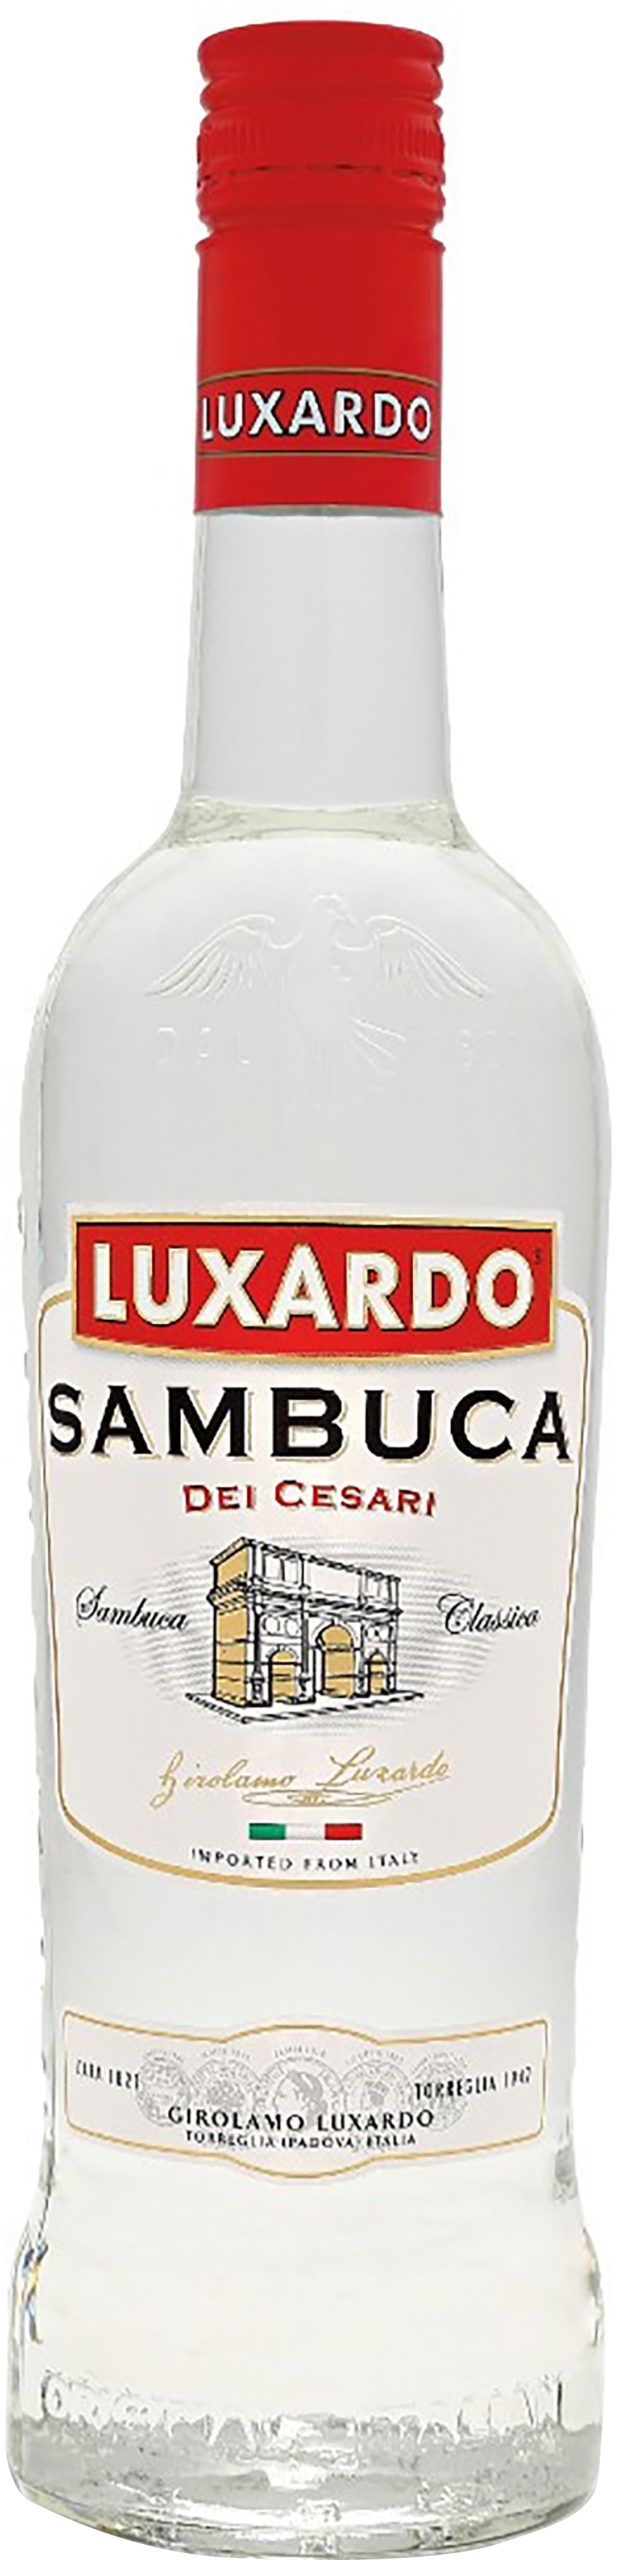 Luxardo Sambuca Dei Cesari